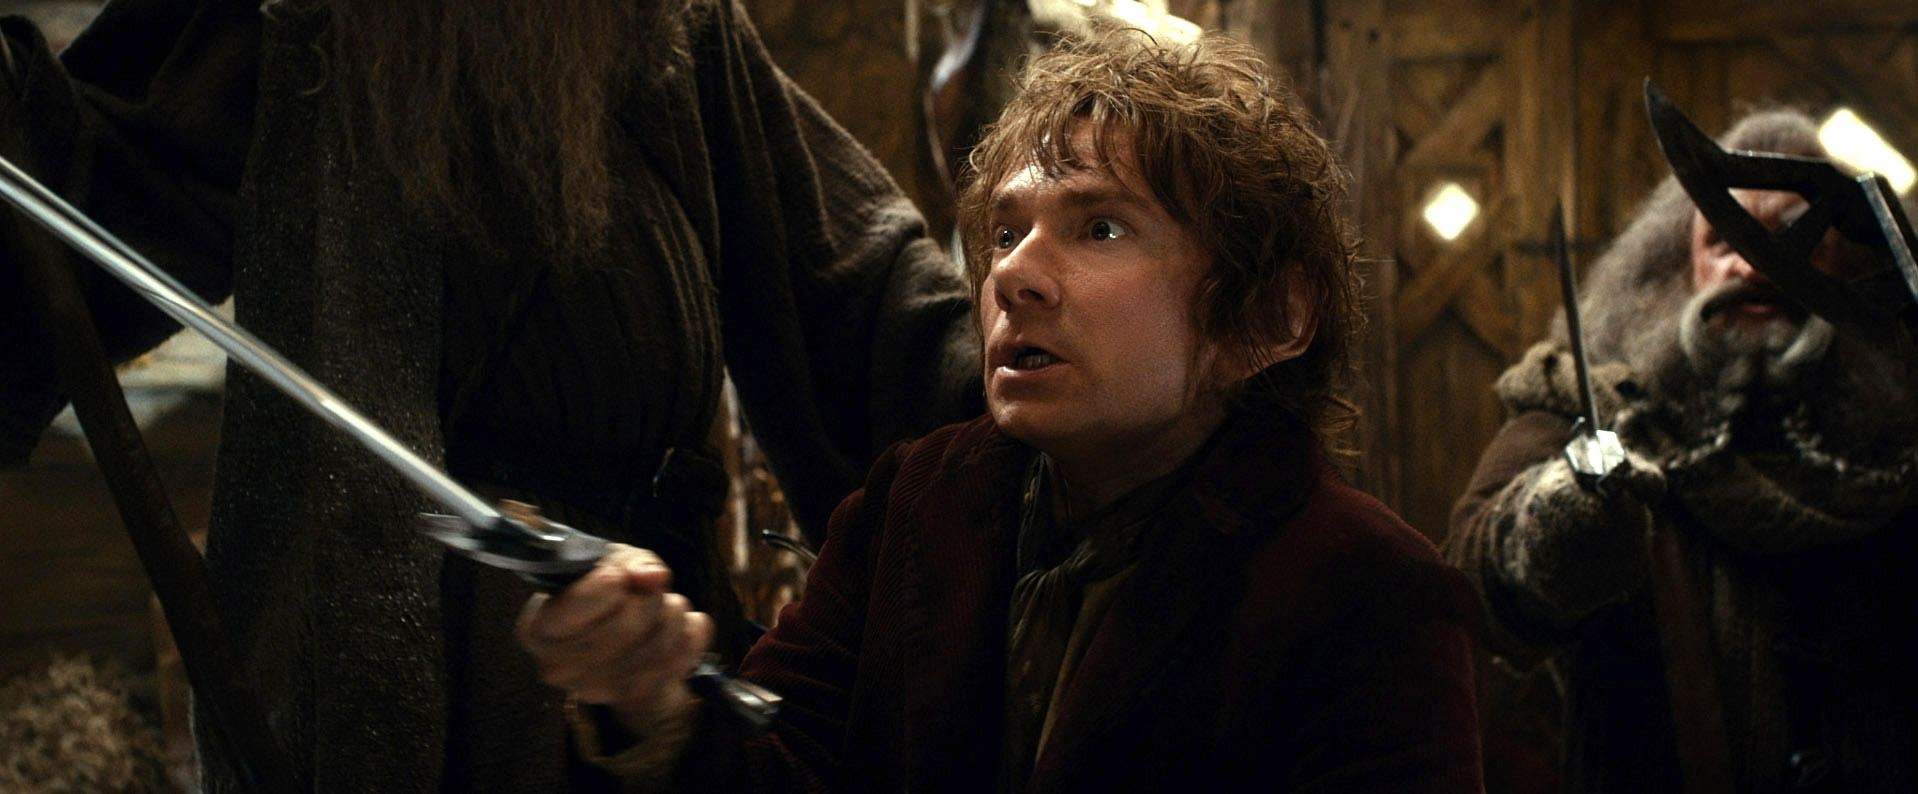 Image du film Le Hobbit : la désolation de Smaug 78e72e59-223c-4f0d-afe9-85dcb0d0ecdd